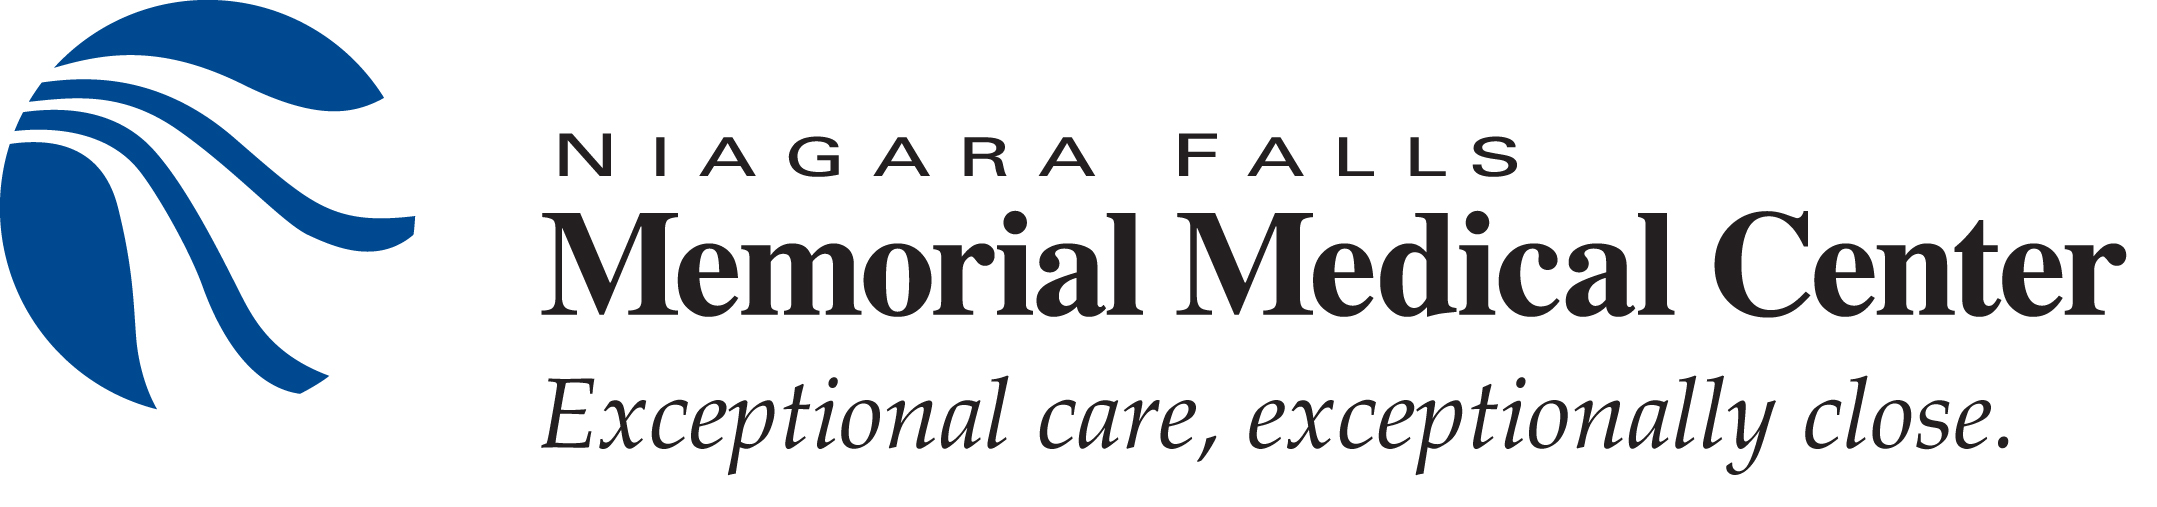 Niagara Falls Memorial Medical Center logo